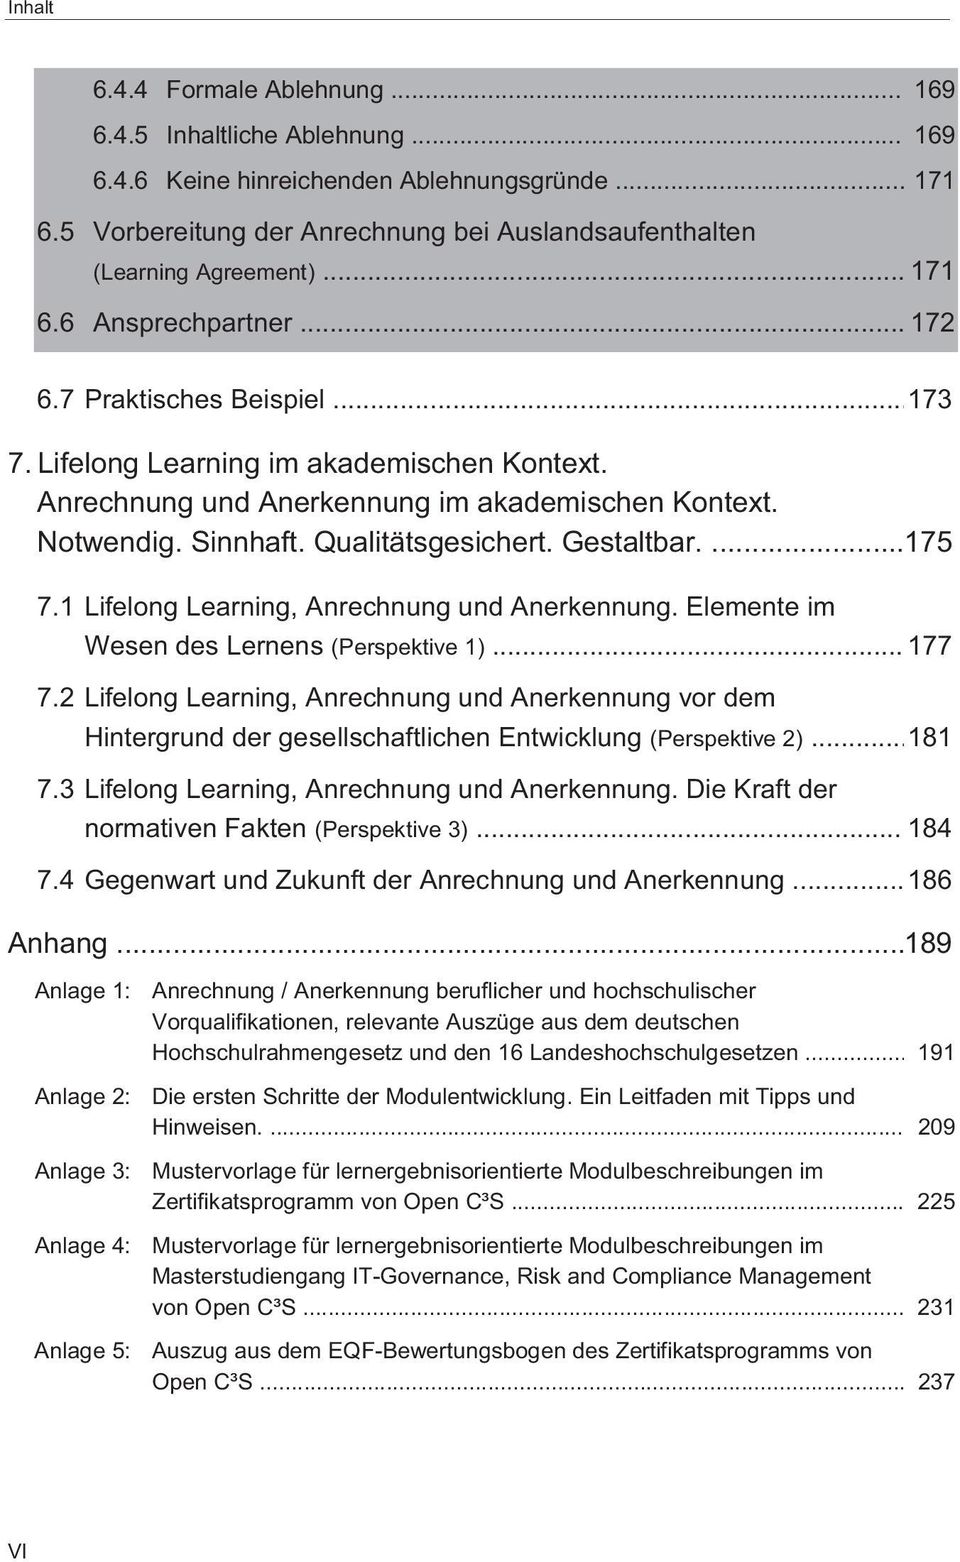 Qualitätsgesichert. Gestaltbar....175 7.1 Lifelong Learning, Anrechnung und Anerkennung. Elemente im Wesen des Lernens (Perspektive 1)... 177 7.